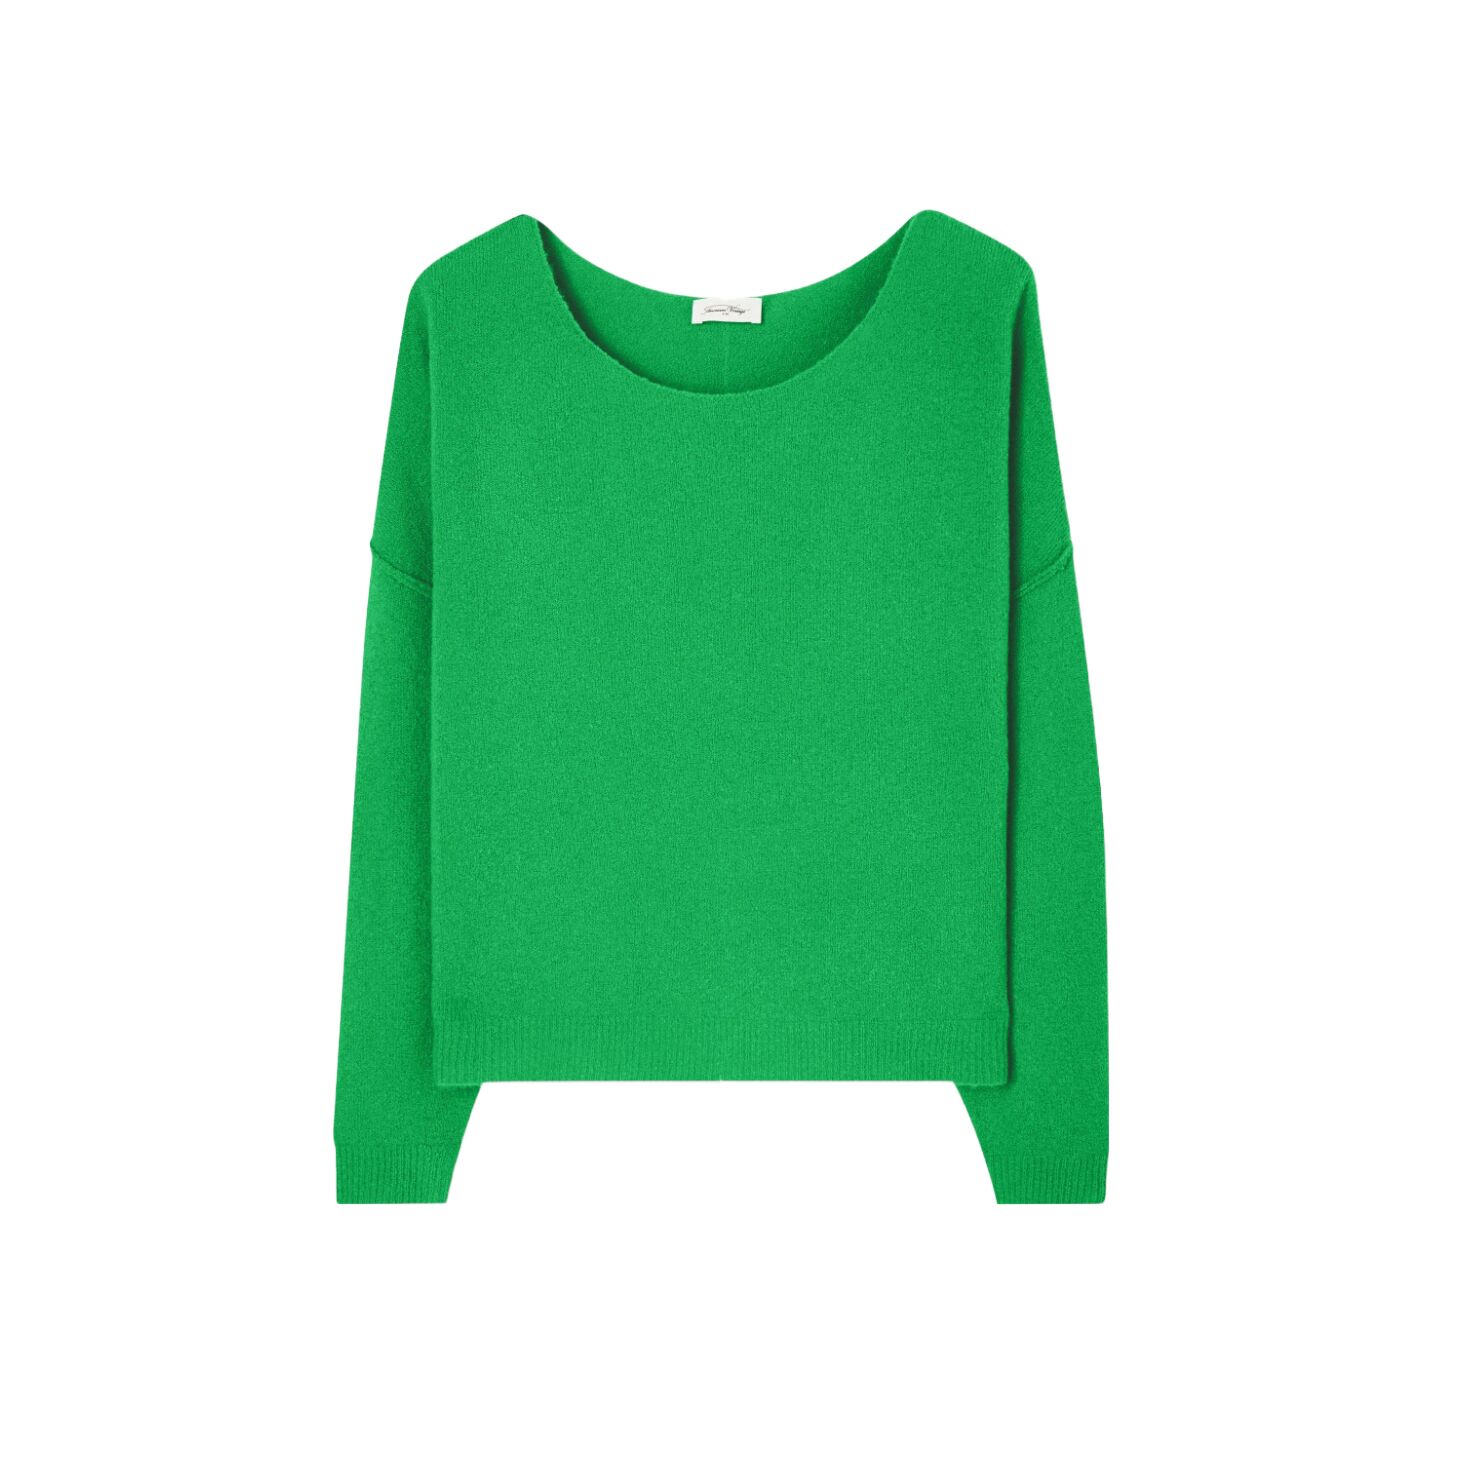 Dam225h23 Damsville American Vintage Pullover Pulli Sweater Anemone Bruine Green Orange Fluor (6)